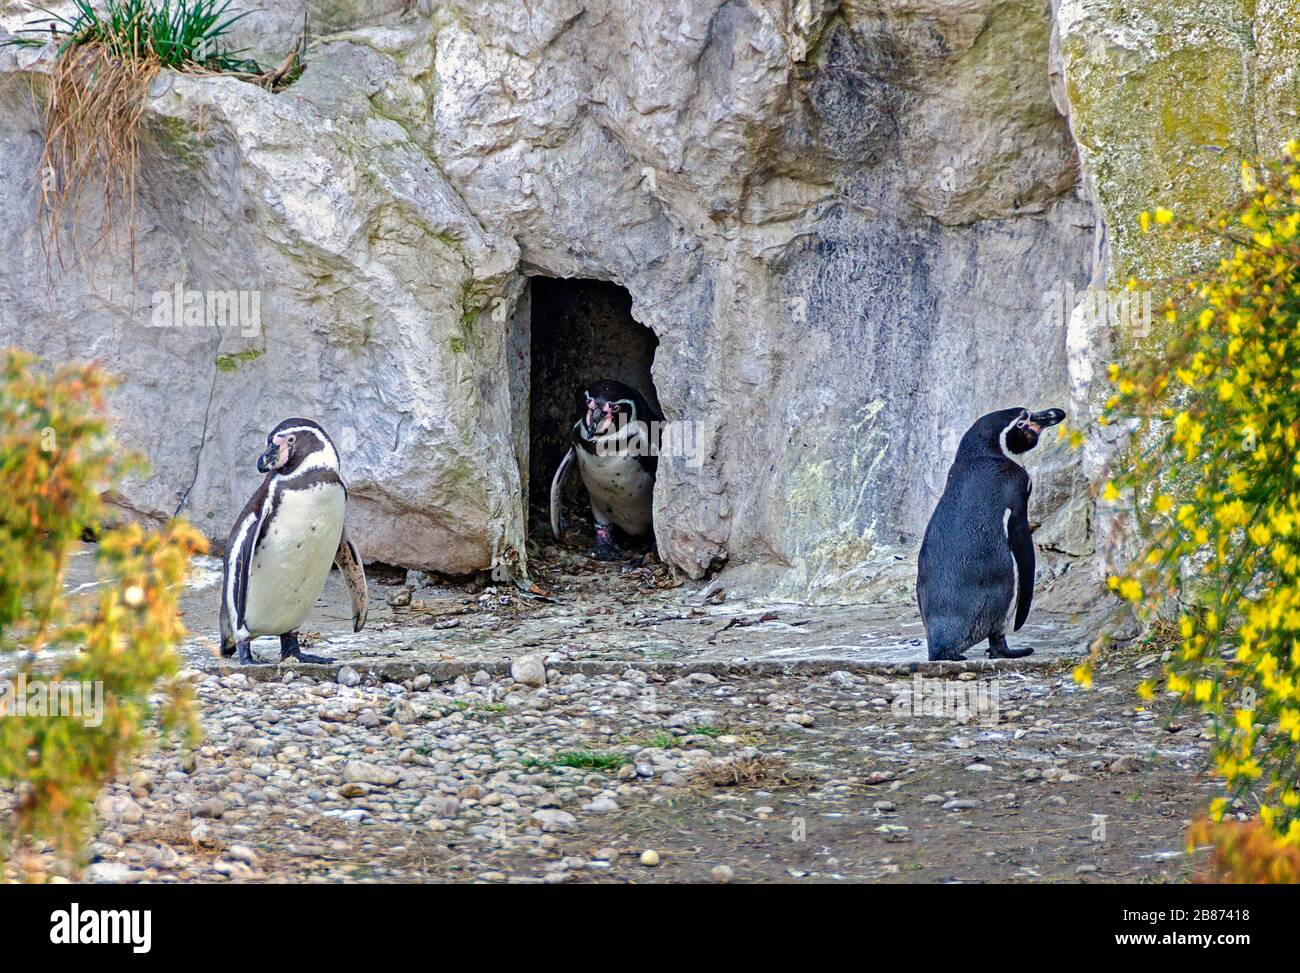 Drei humboldtpinguine, die sich rechts verhalten, einer zu Hause in einer Höhle und zwei draußen, die Abstand halten Stockfoto